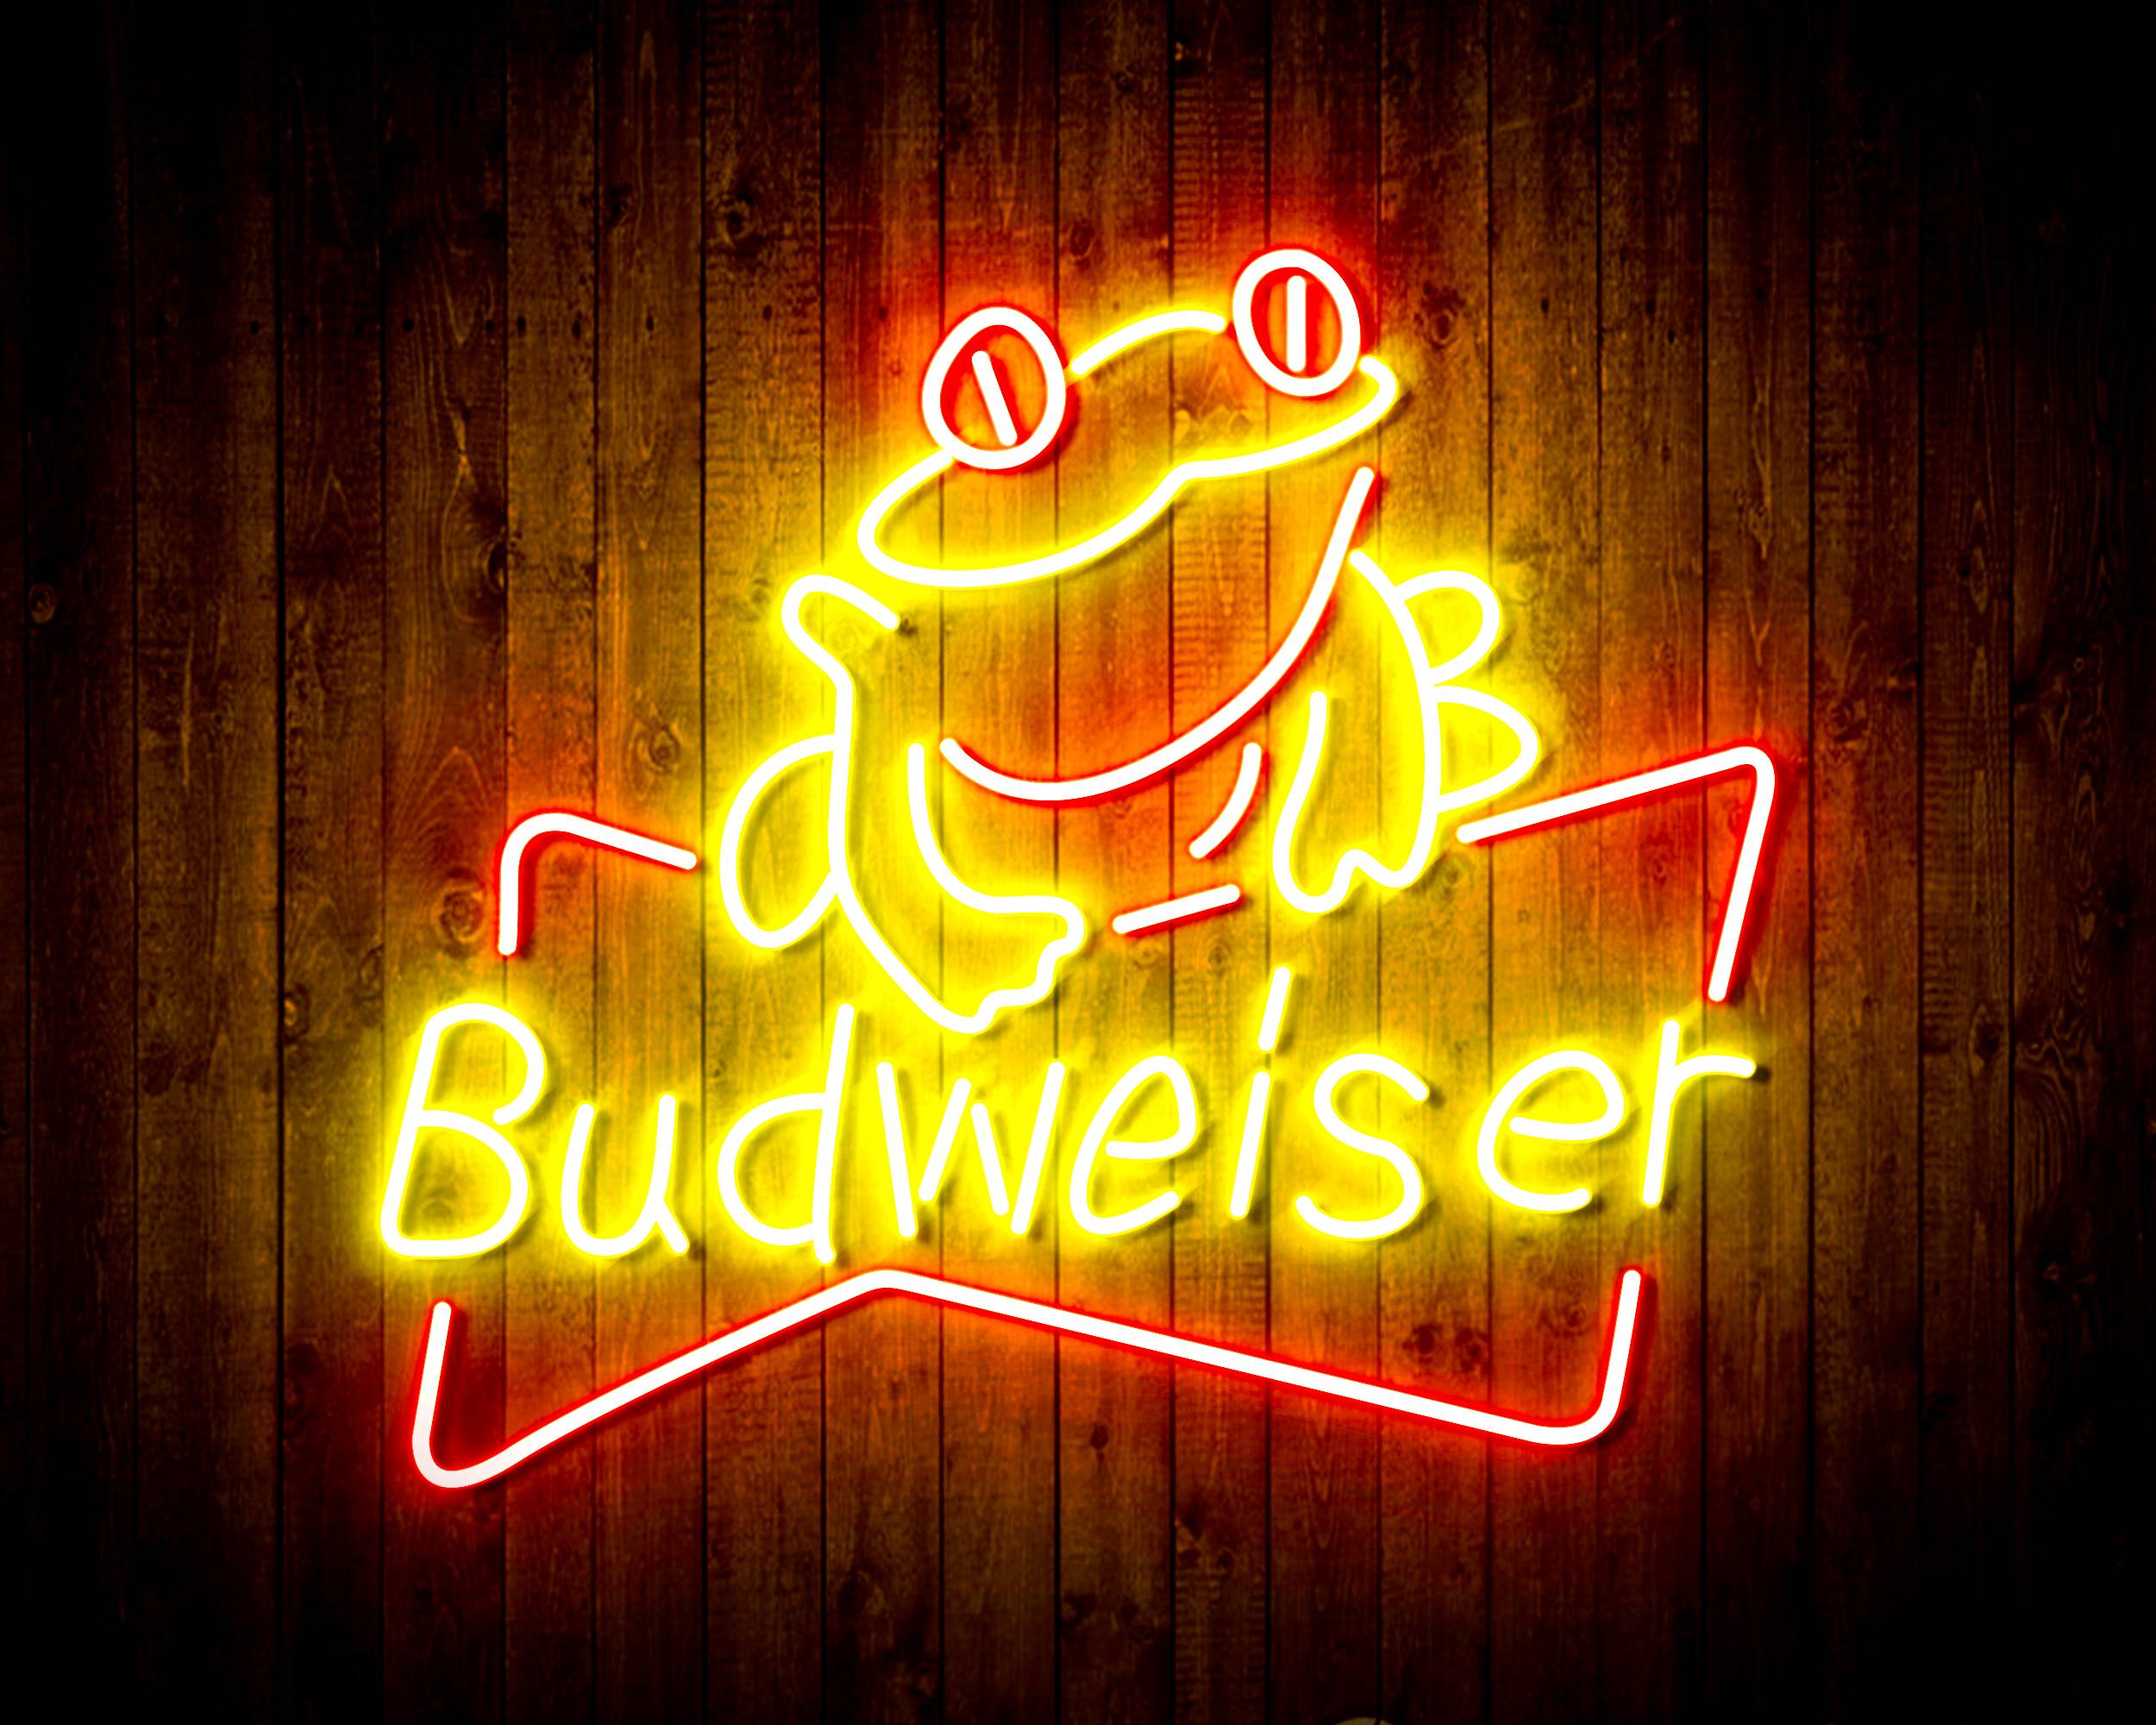 Budweiser Frog Beer Bar Neon LED Sign